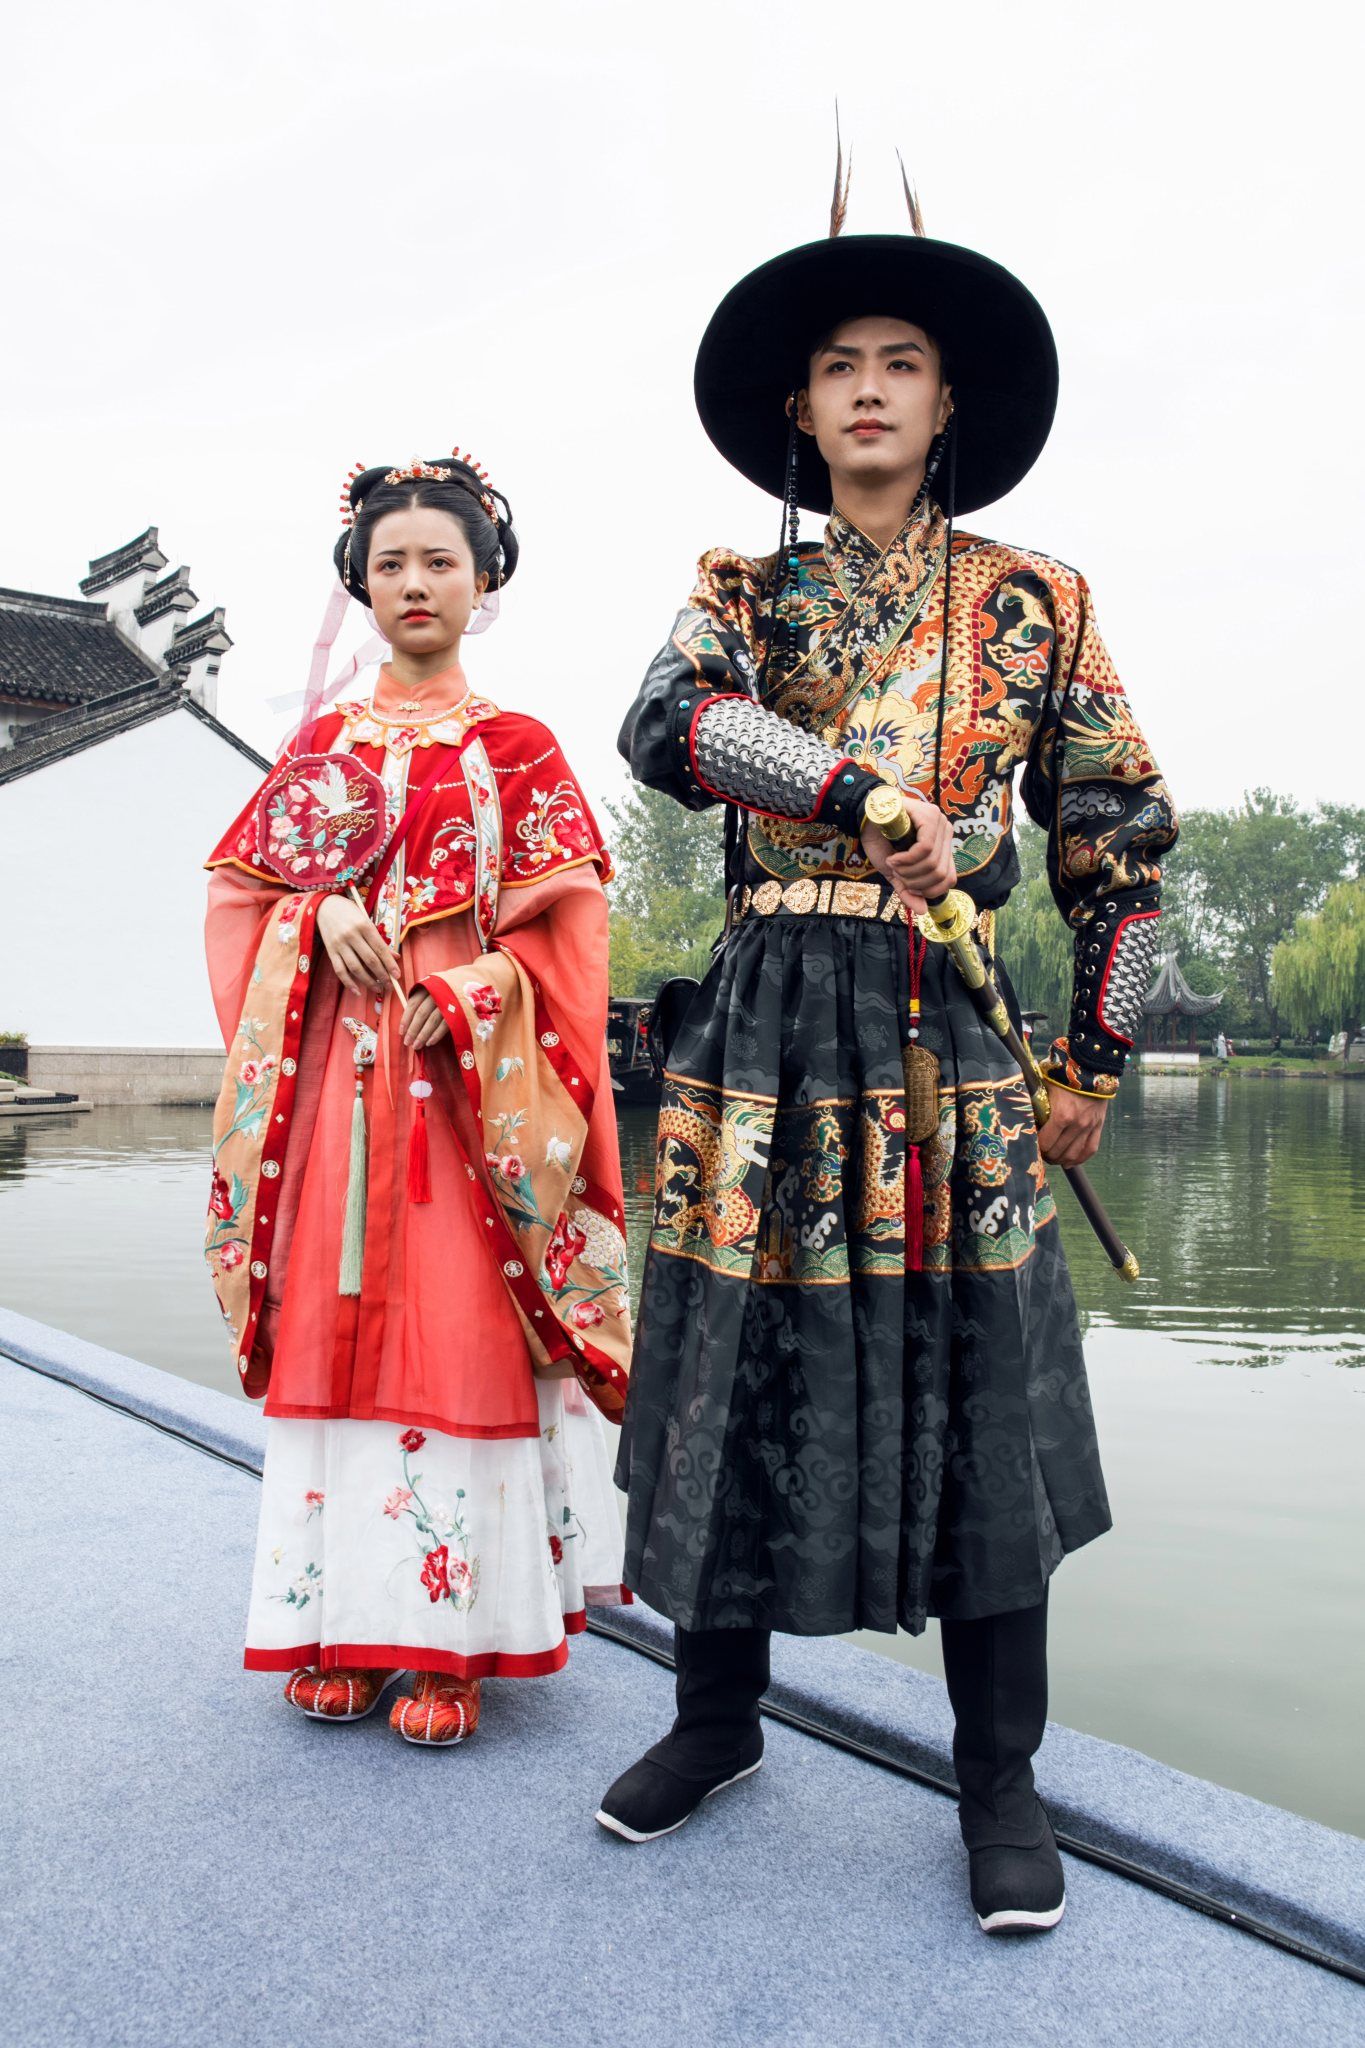 スナップ 中国で若者を中心に人気集める 漢服 漢民族の伝統衣装の魅力をアピール Wwdjapan